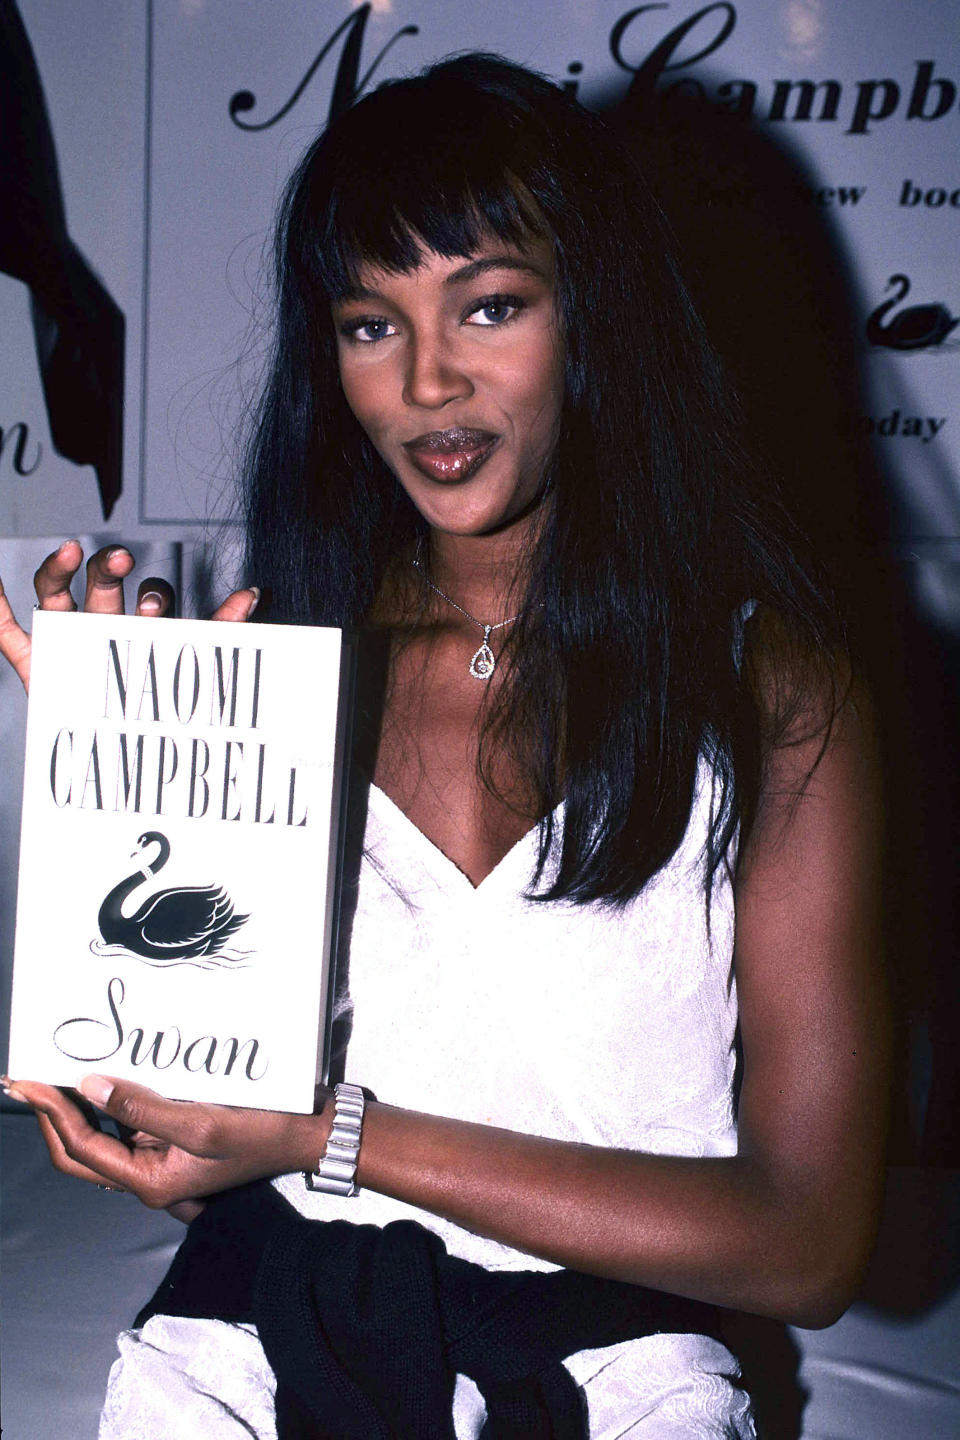 Renvoyée de l’agence Elite, Naomi Campbell décide de varier ses activités. La star publie en 1994 le roman Swan, centré sur une héroïne réputée pour être le mannequin le plus célèbre au monde. Le modèle révèlera plus tard que l’ouvrage a en réalité été écrit par l’auteure britannique Caroline Upcher.